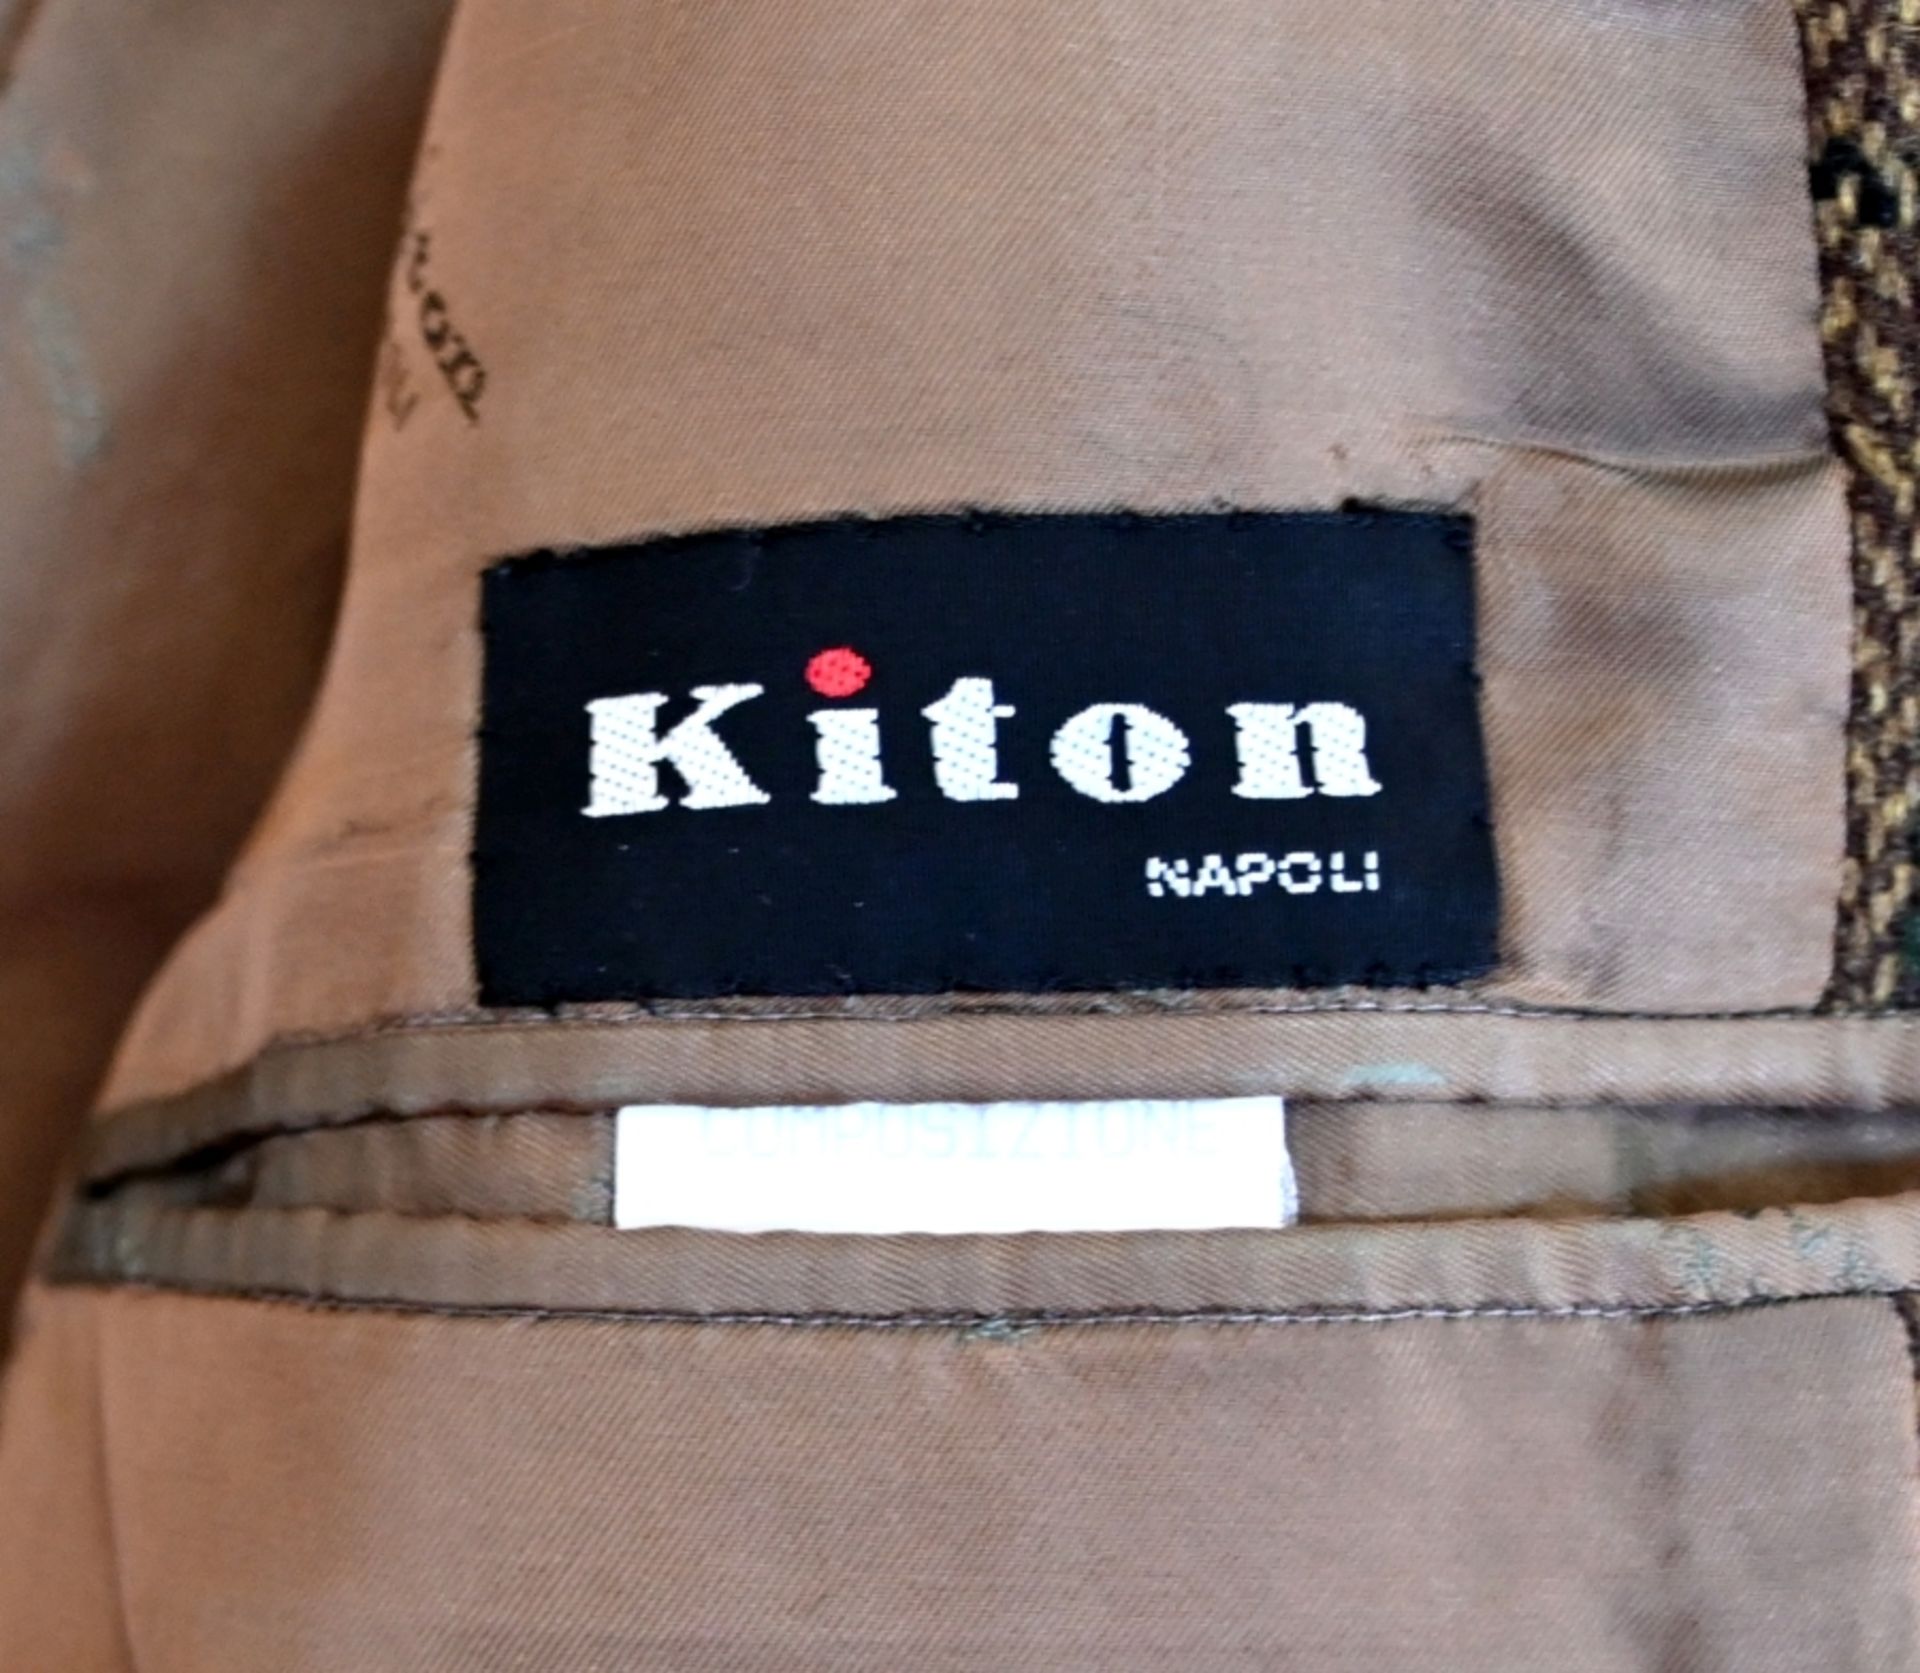 JACKETT Marke "Kiton, Italien" - Bild 3 aus 4